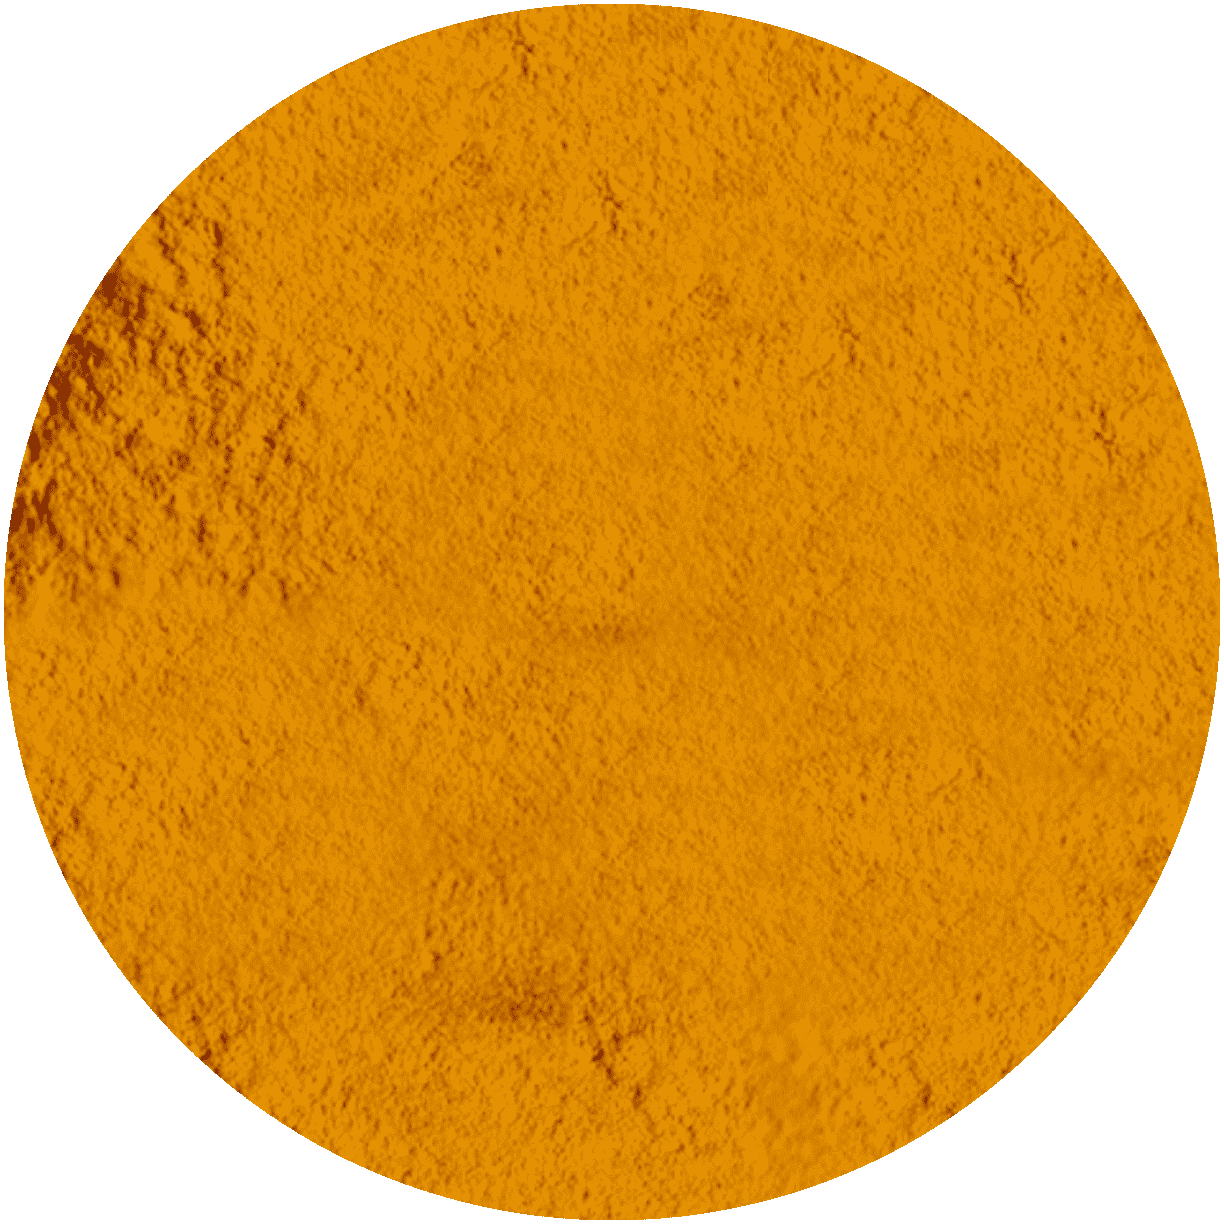 Orange-Peel-Exfoliator